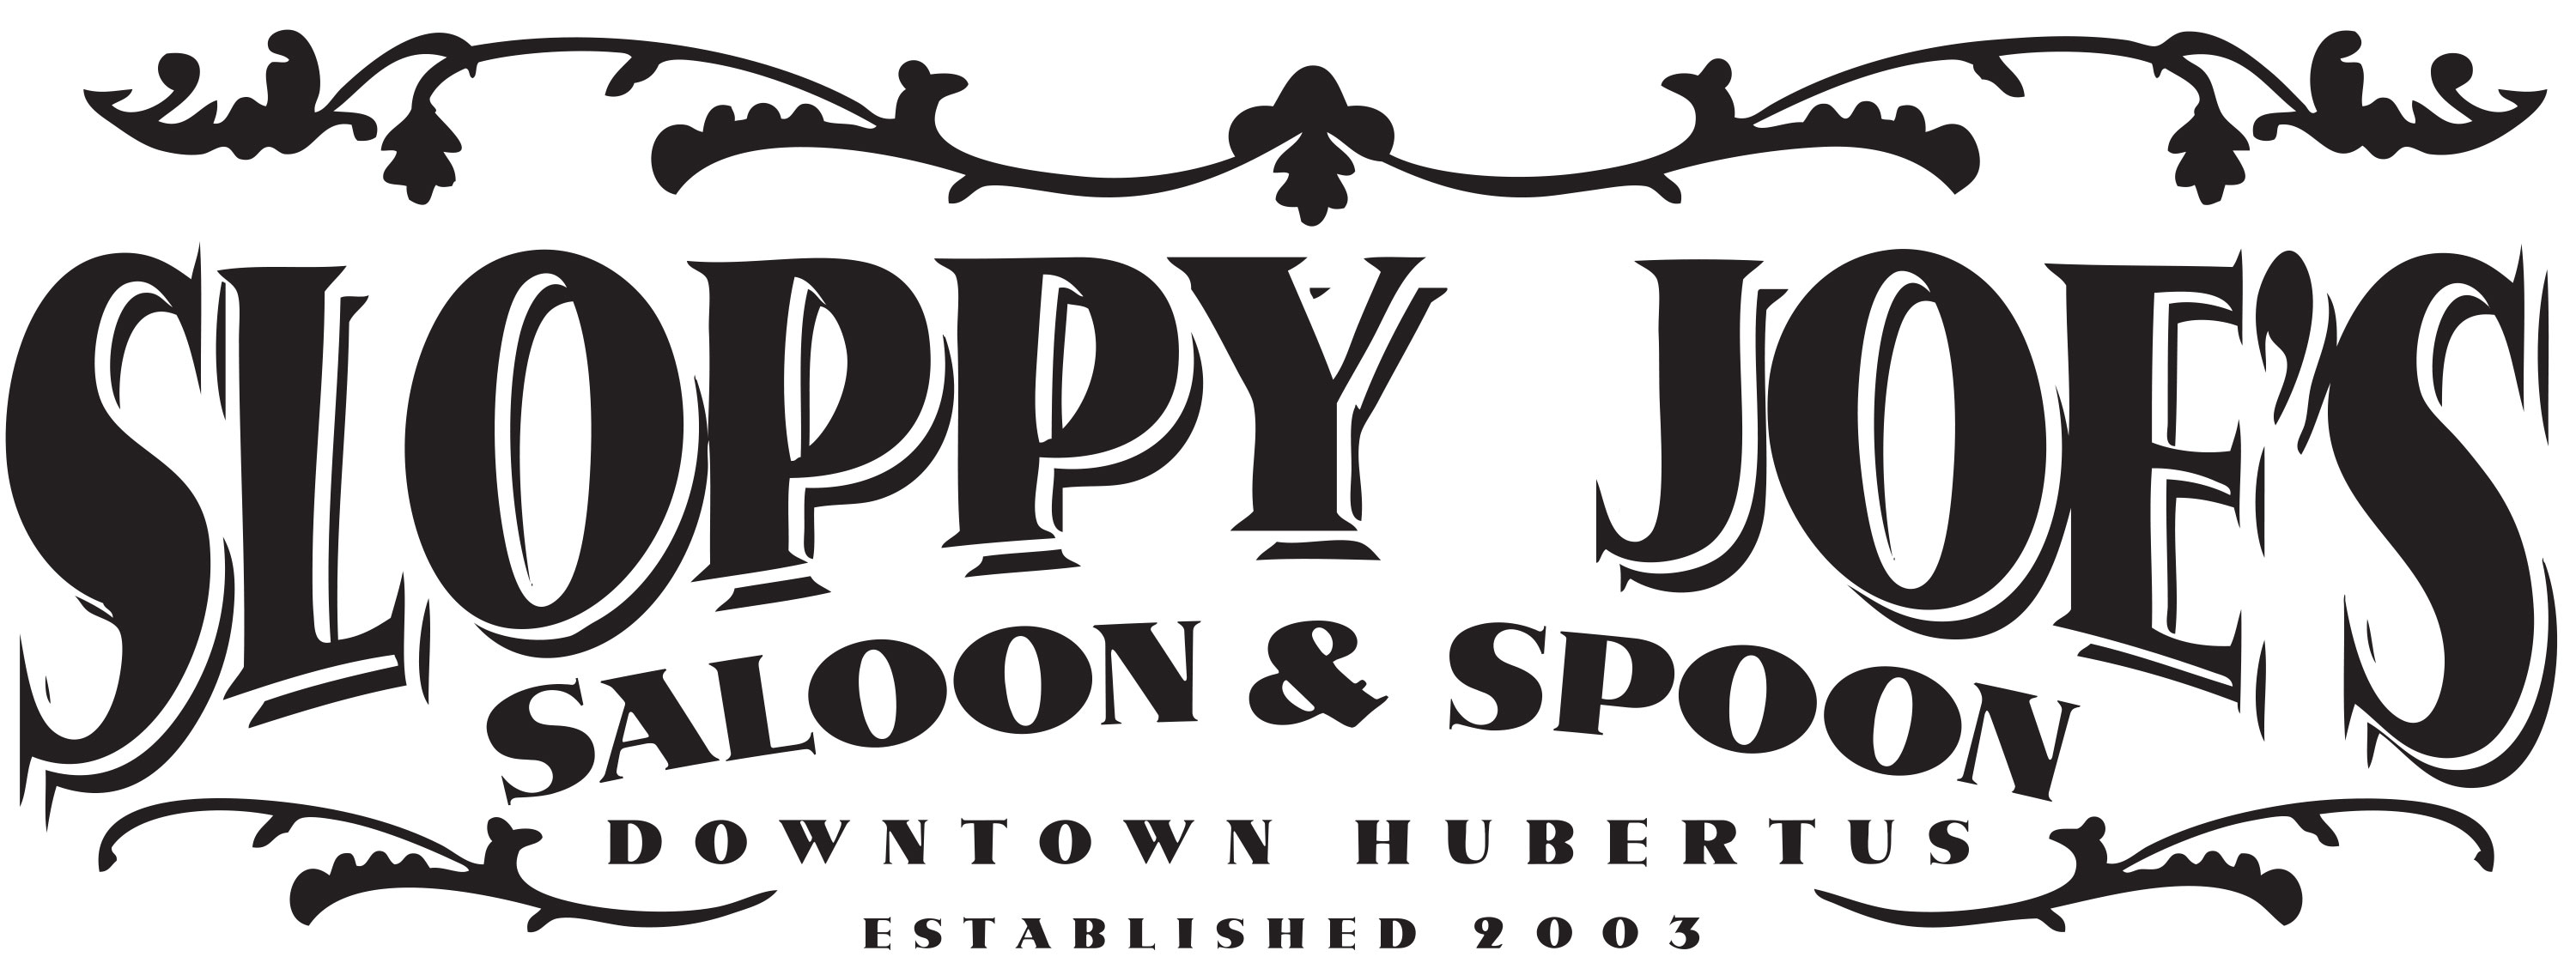 Sloppy Joe's Saloon and Spoon